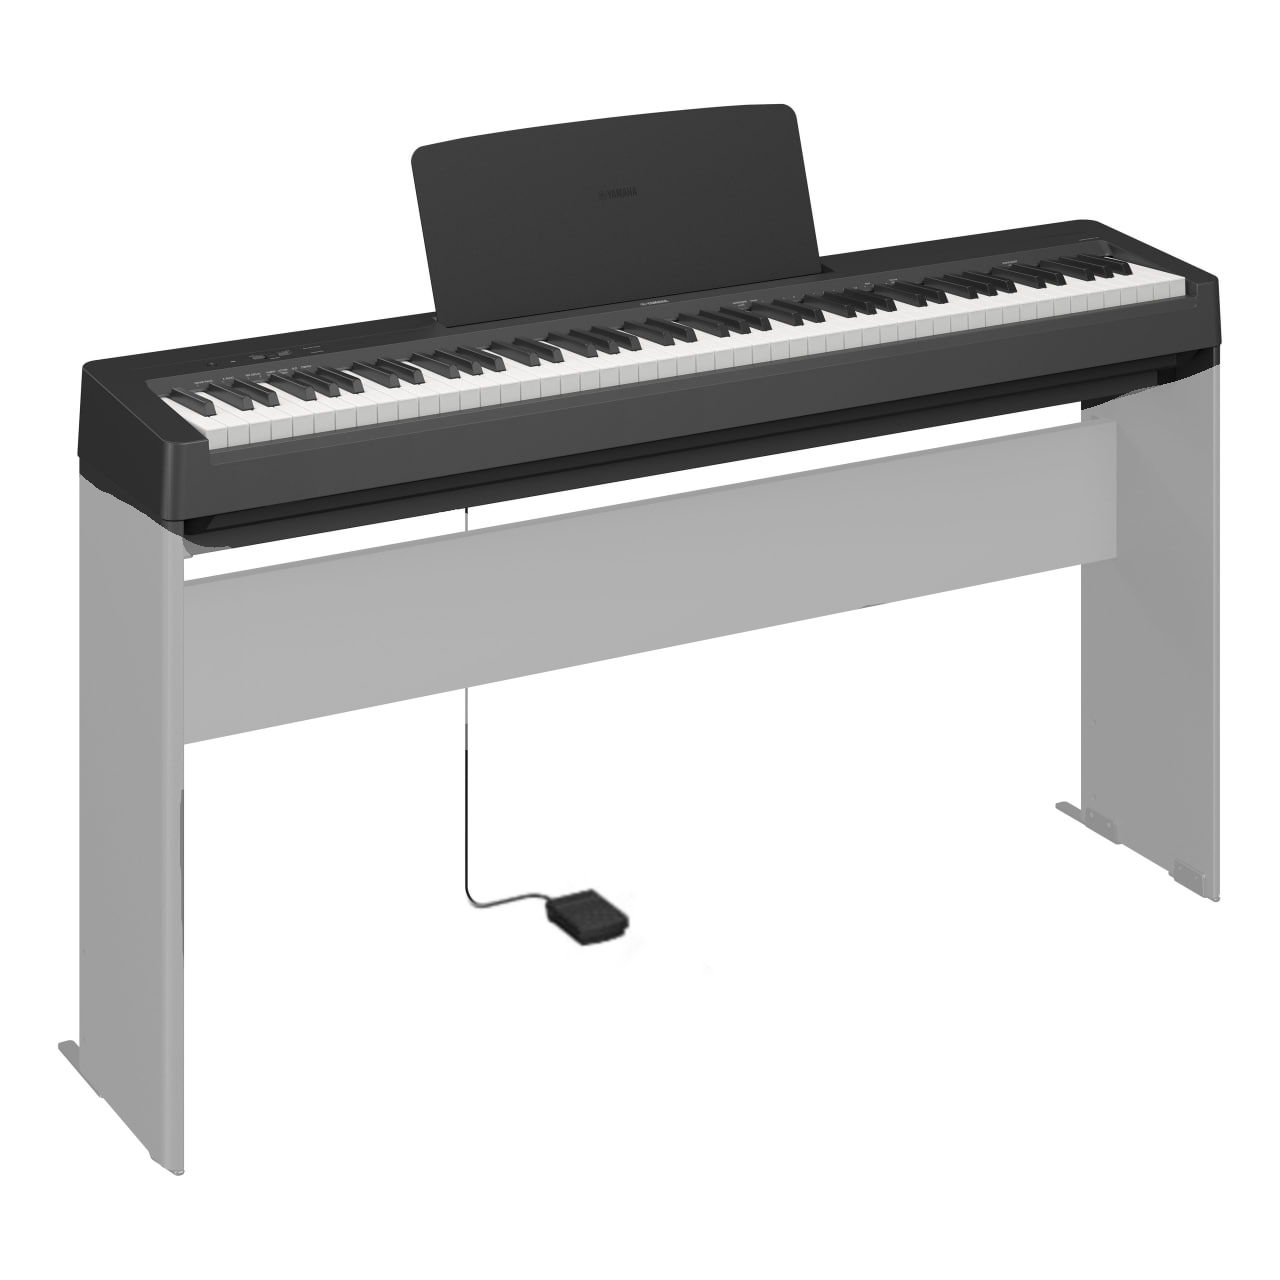 Цифровые пианино Yamaha P-143B пьесы для фортепиано на технику игры двойными нотами октавами аккордами для учащихся средних и старших классов дмш и дши